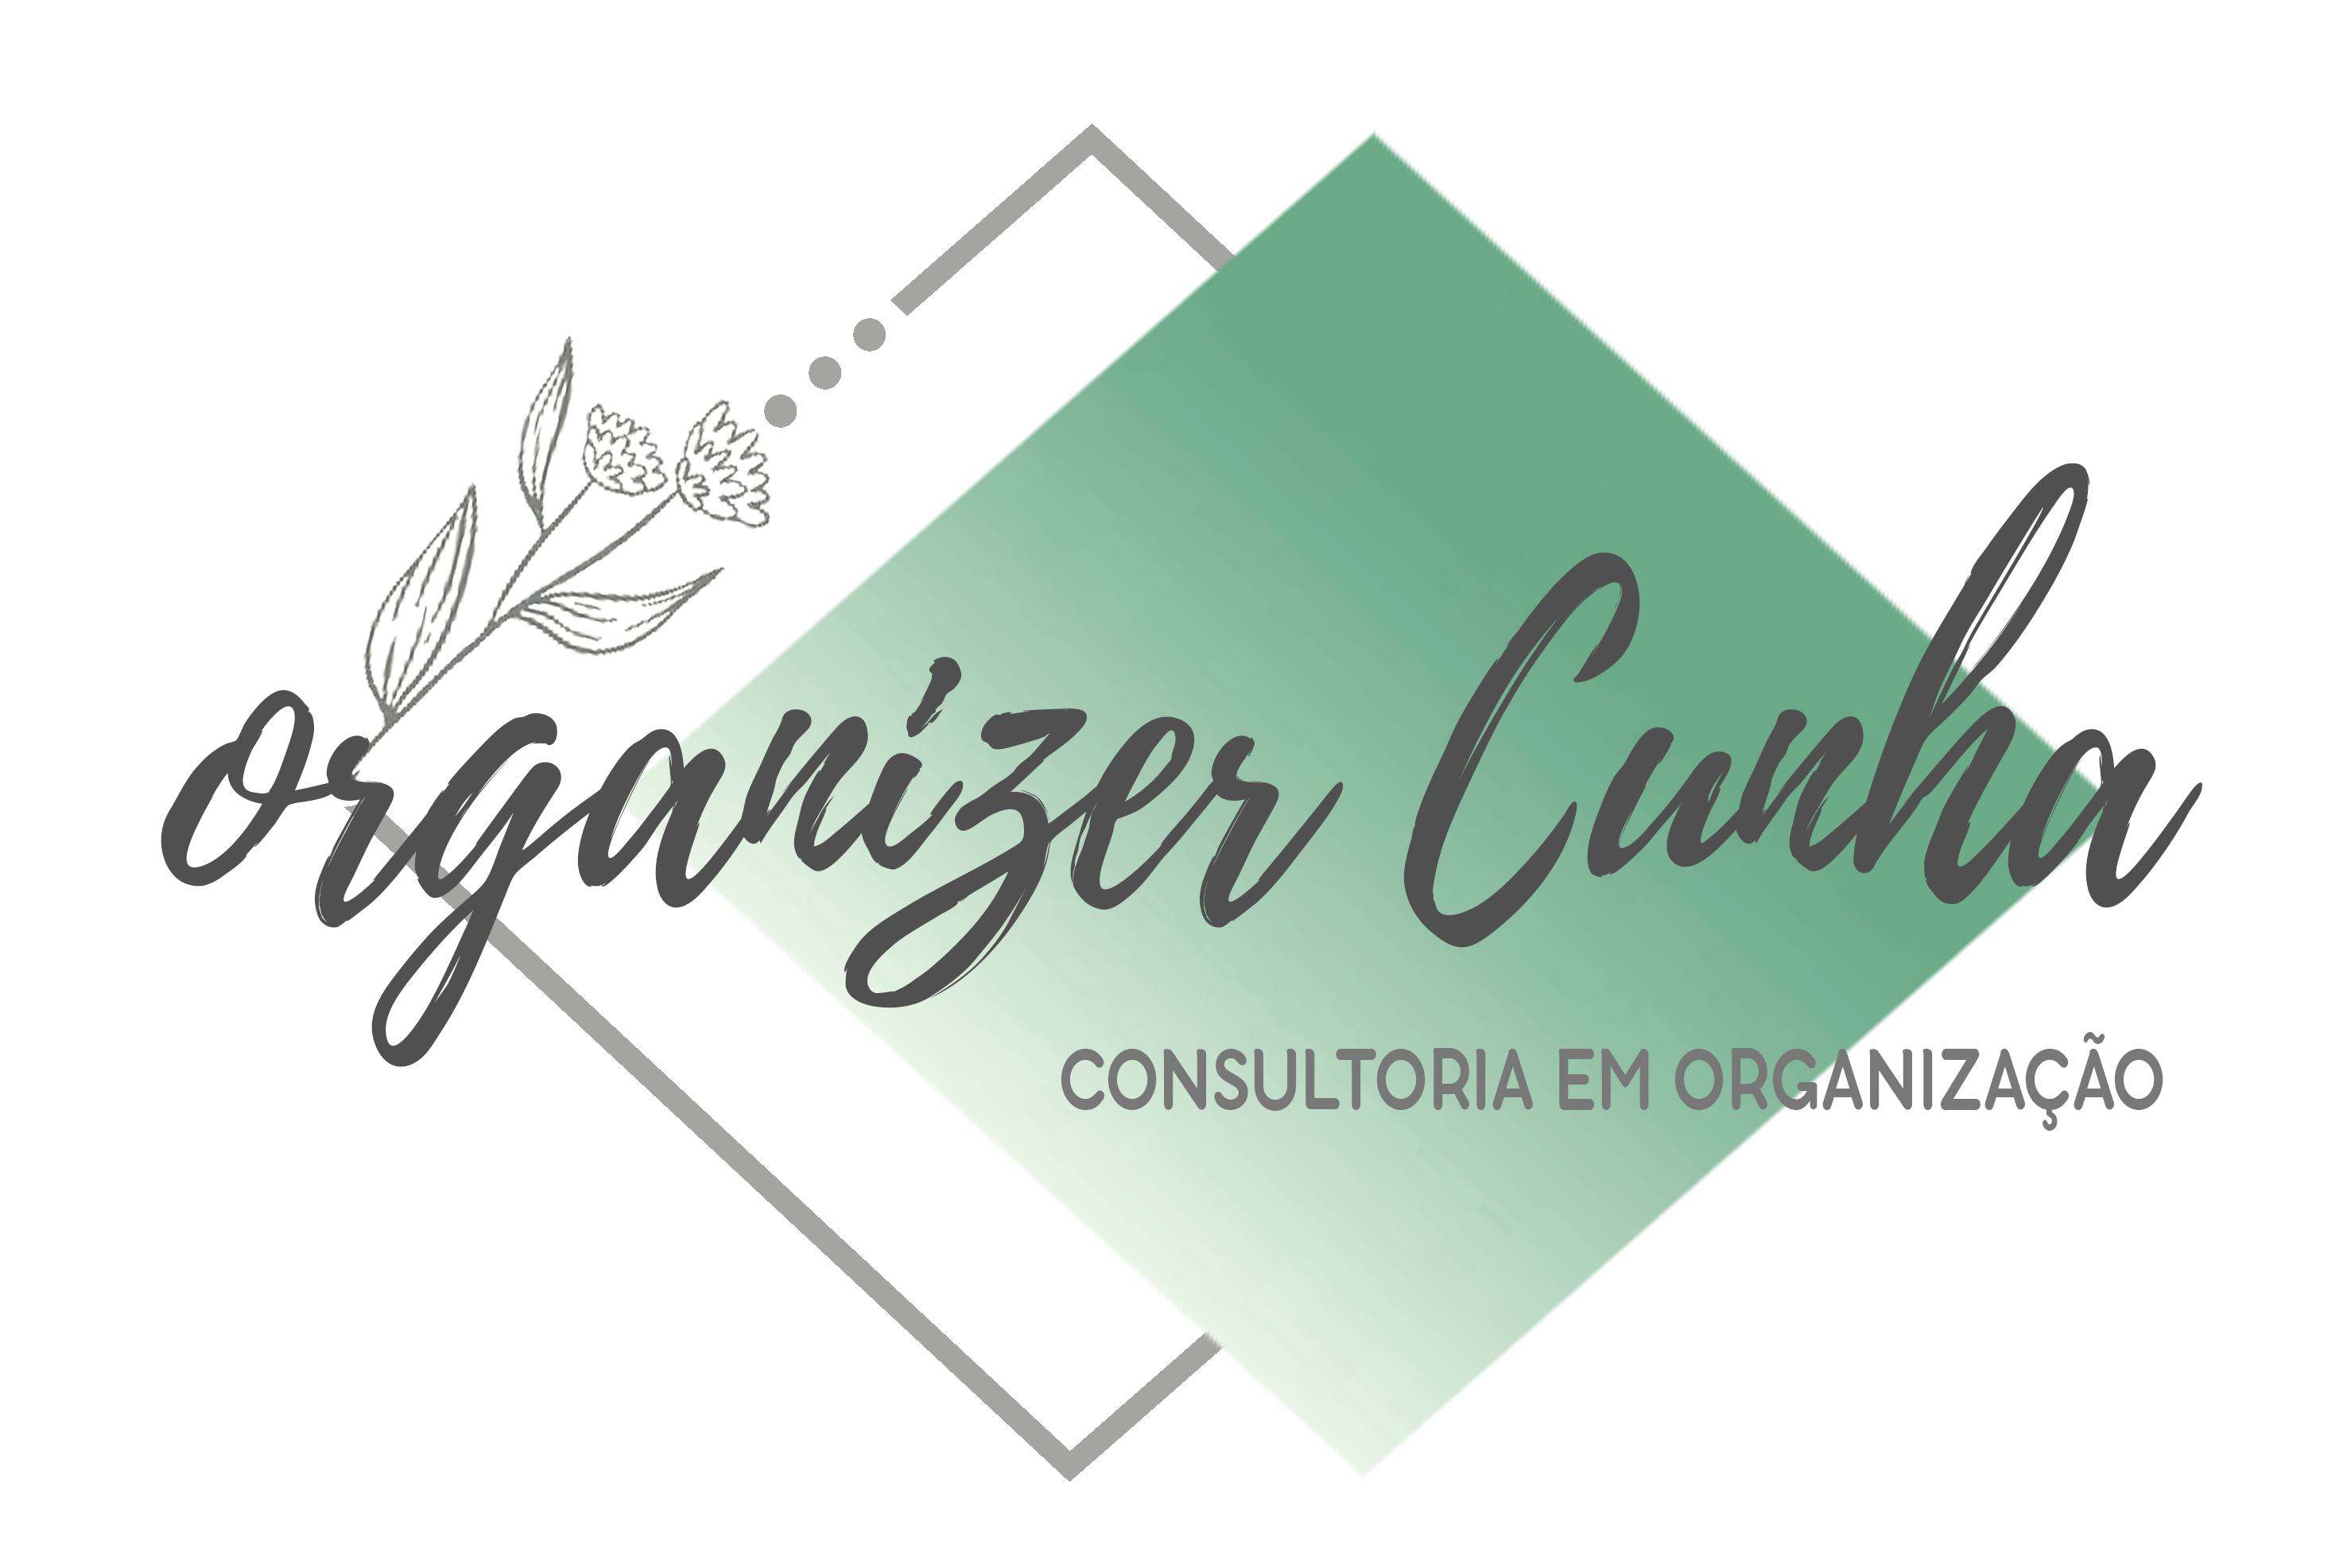 Organizer Cunha